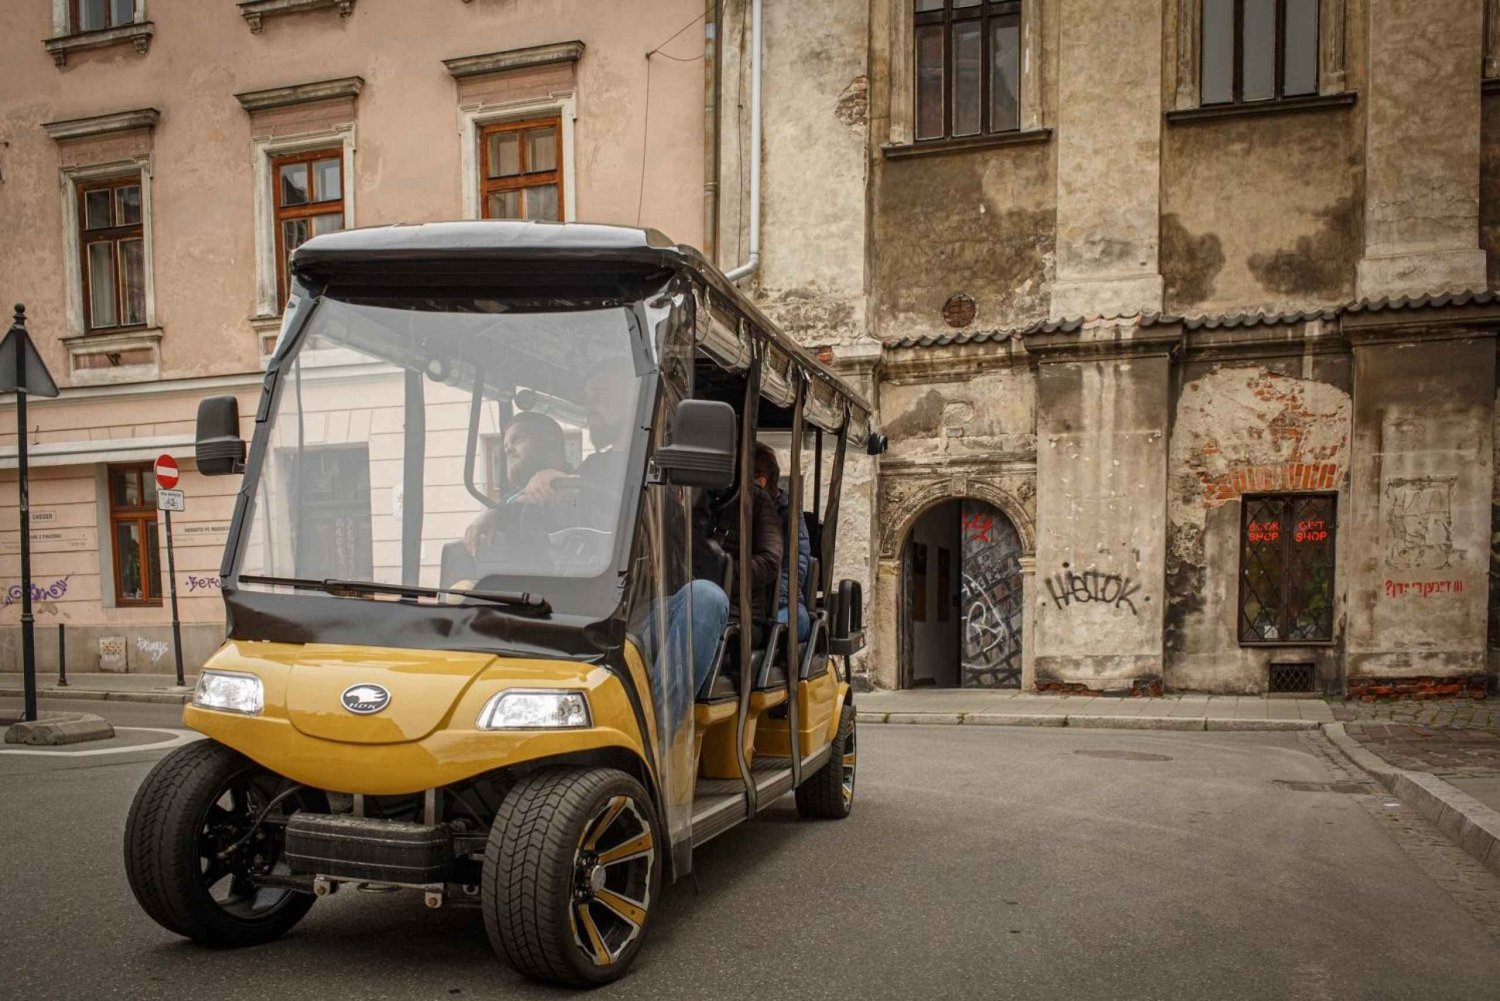 Cracovia: Tour della città in golf cart e tour guidato della fabbrica di Schindler